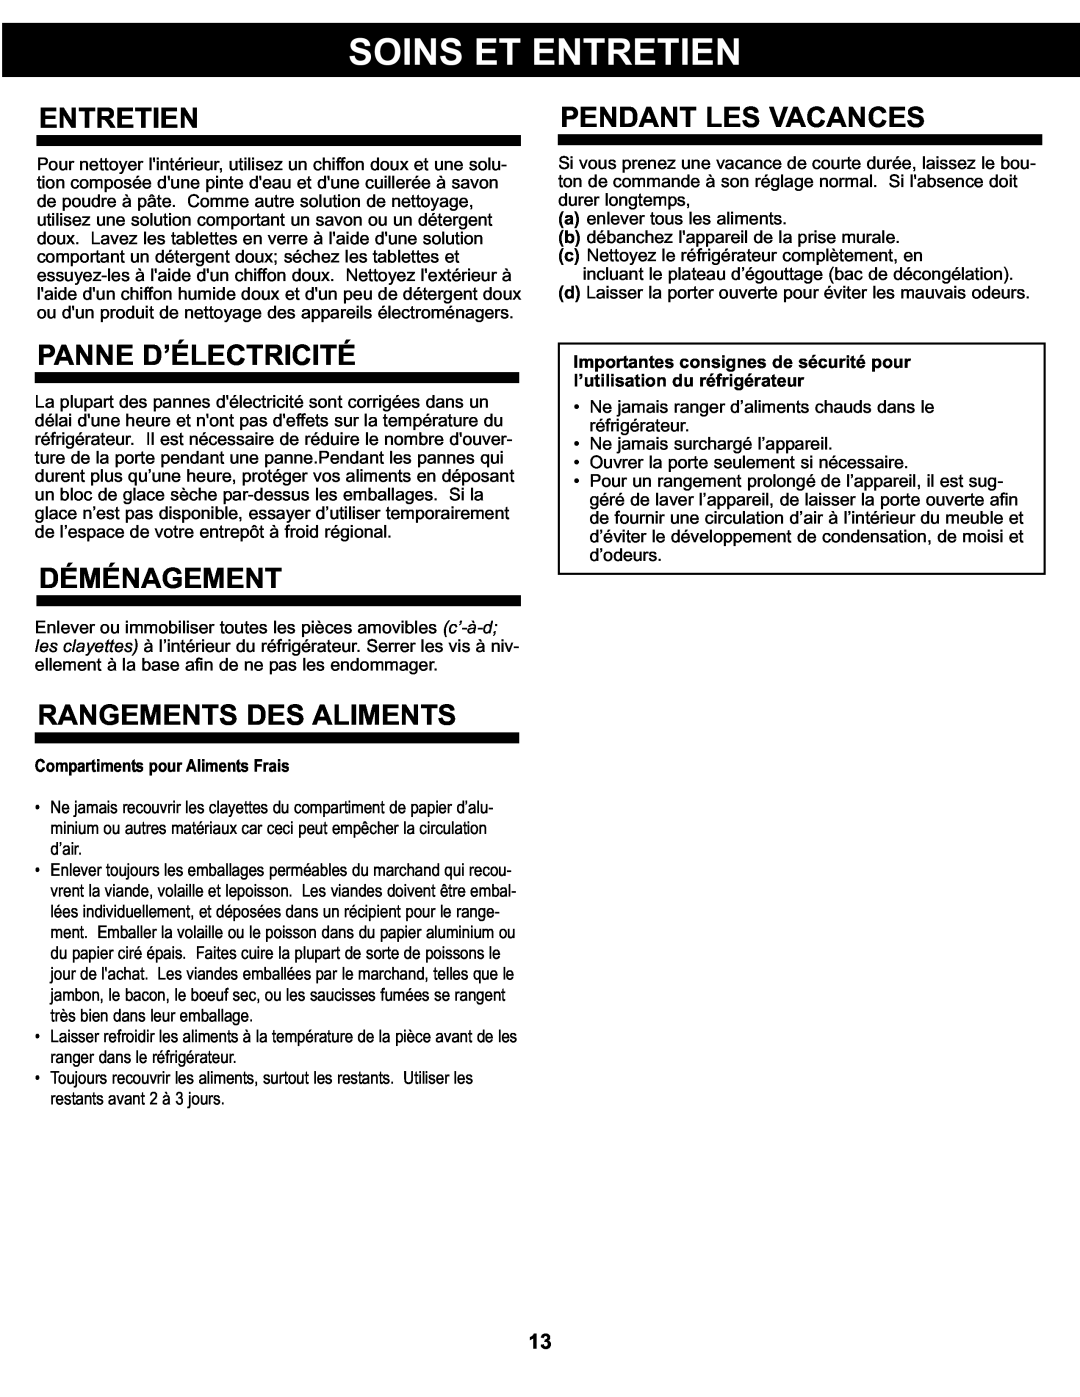 Danby DCR122WDD manual Entretien, Panne D’Électricité, Déménagement, Rangements Des Aliments, Pendant Les Vacances 